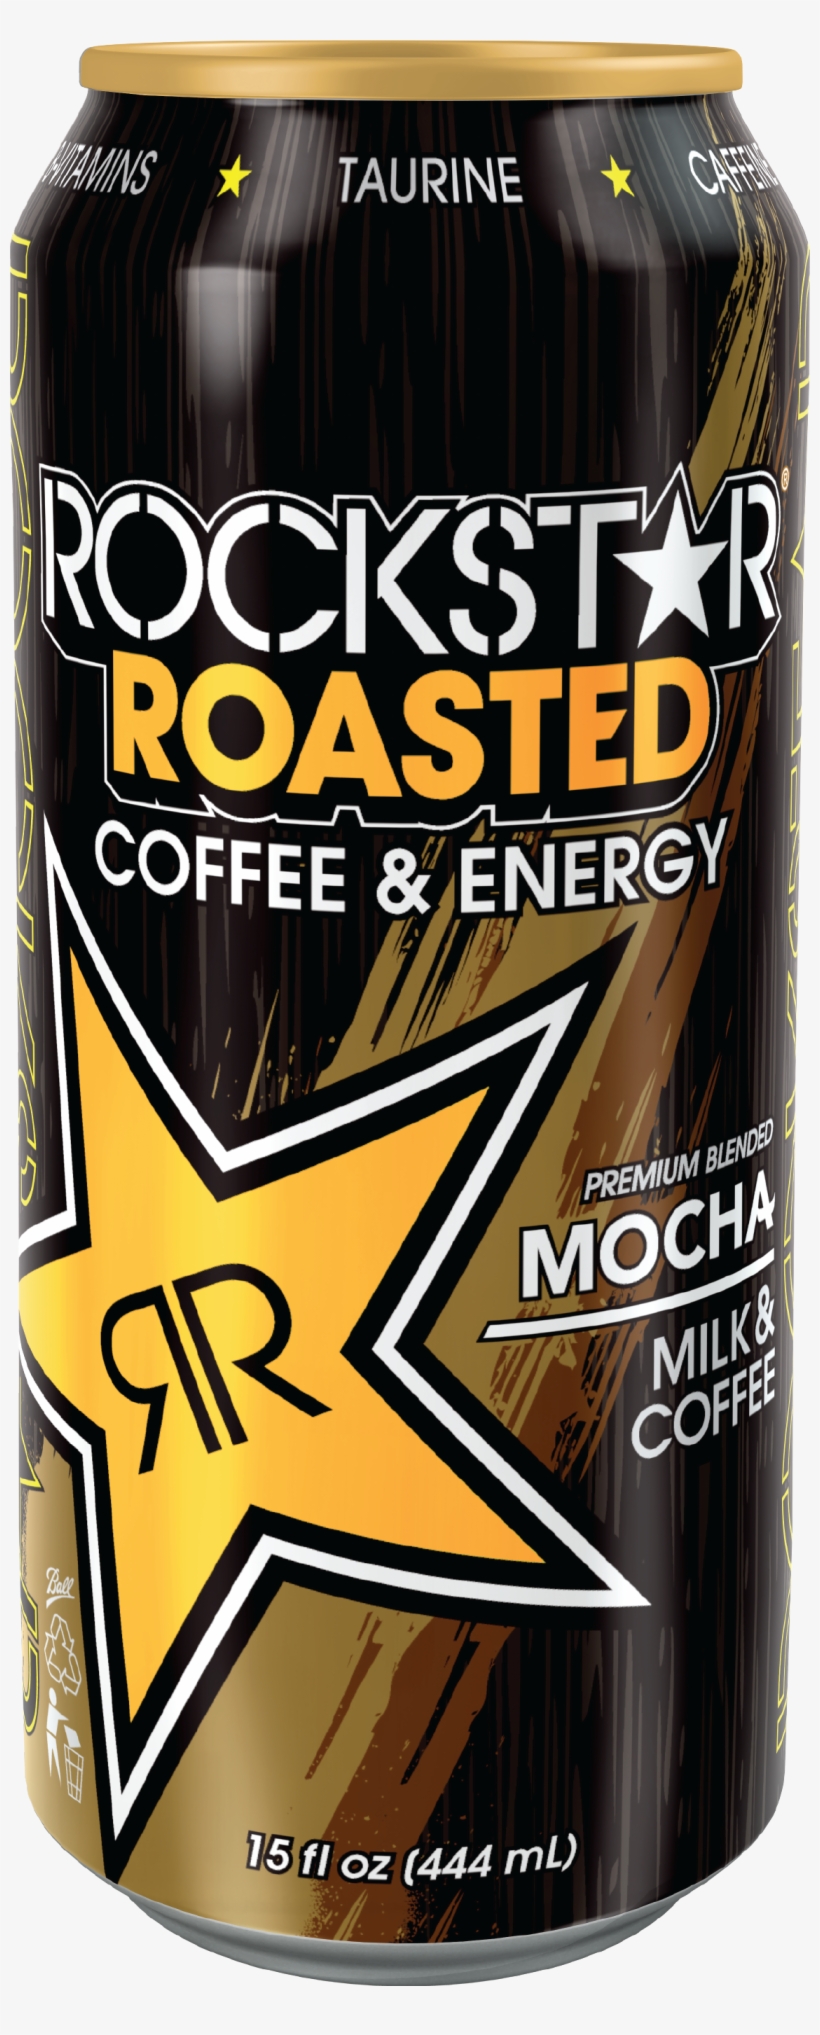 Rockstar Roasted Mocha - Rockstar Energy Drink, transparent png #4523068